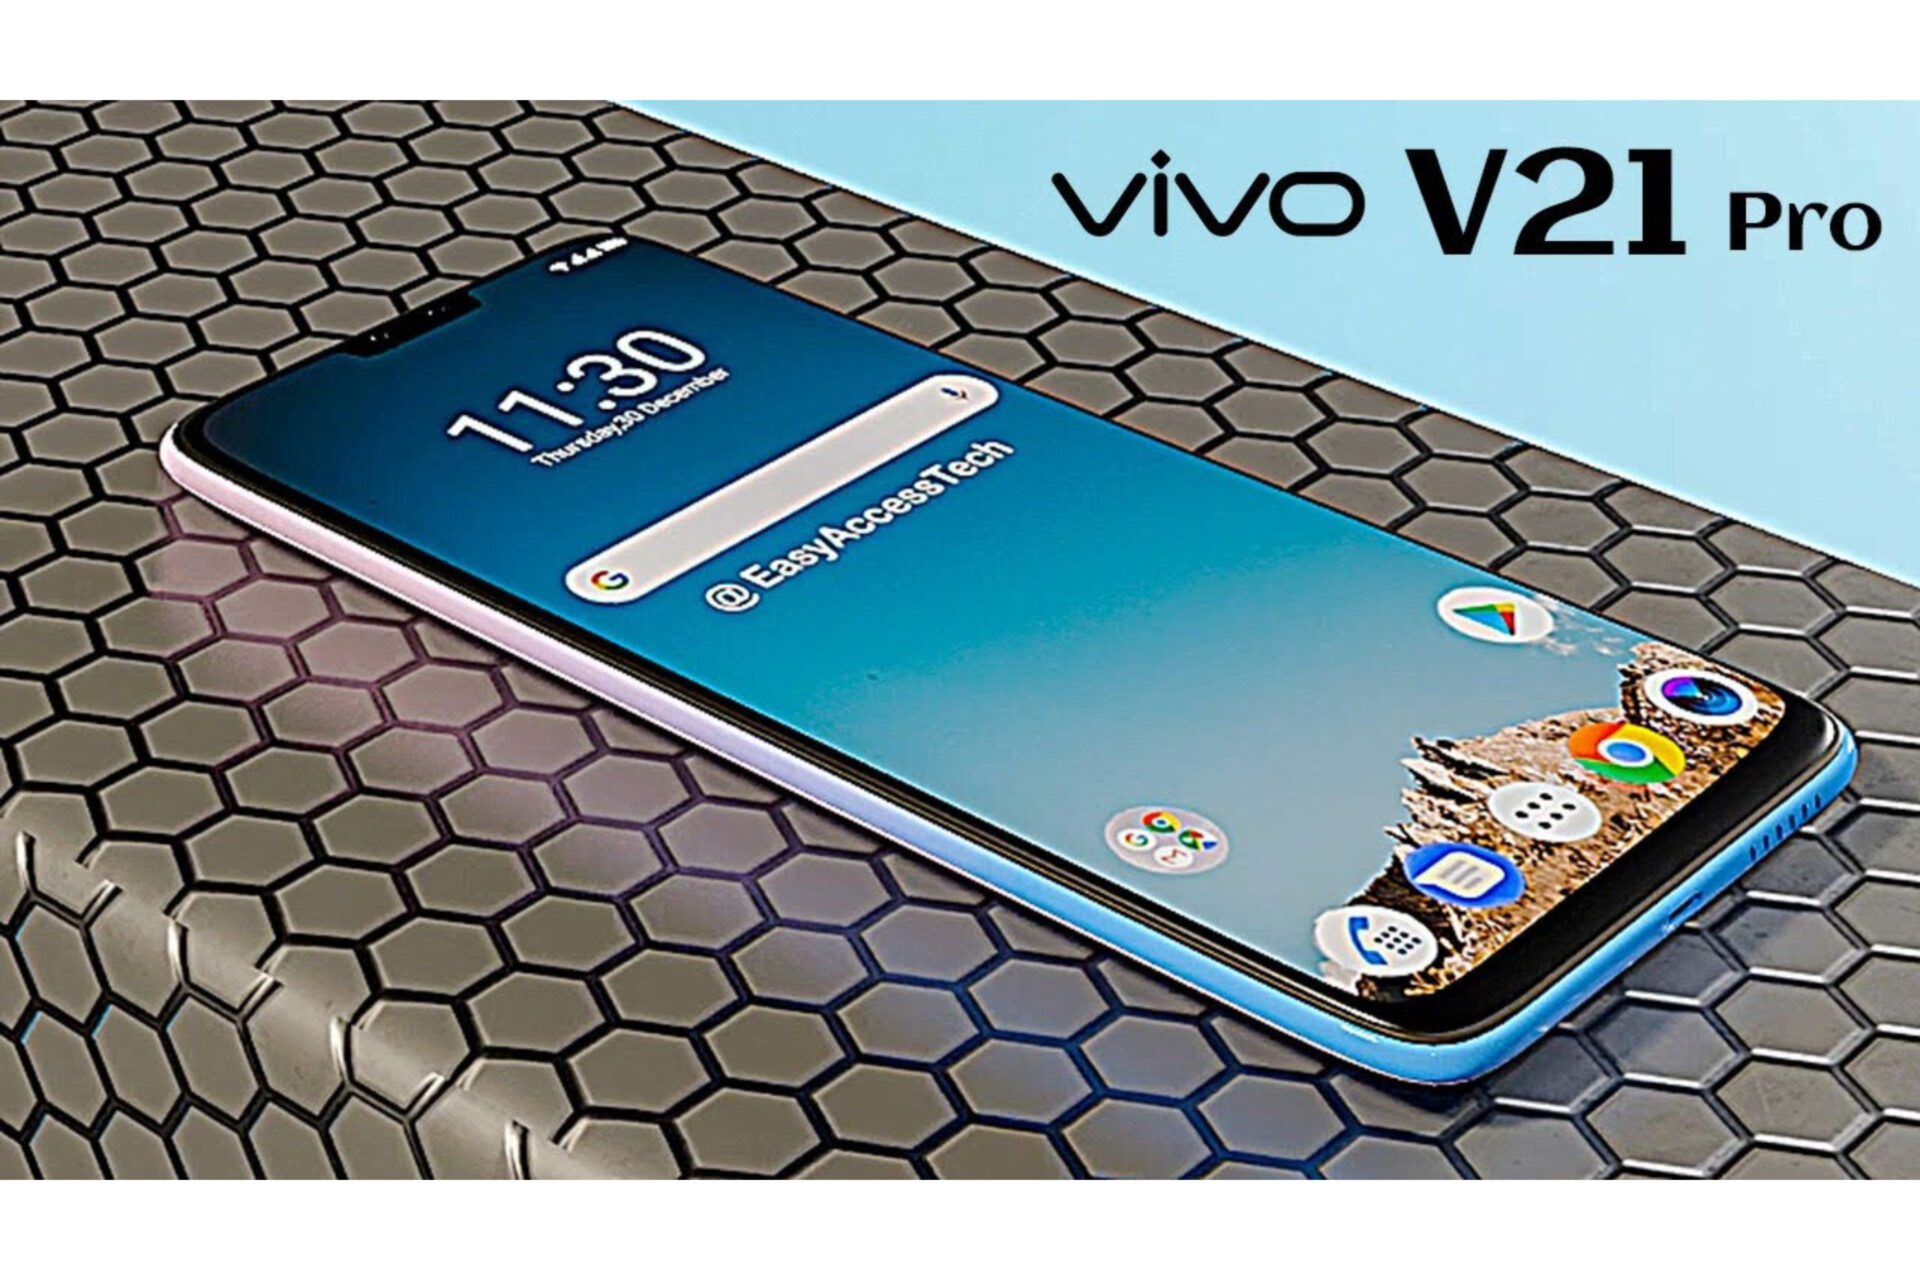 Vivo V21 Pro Price in UAE